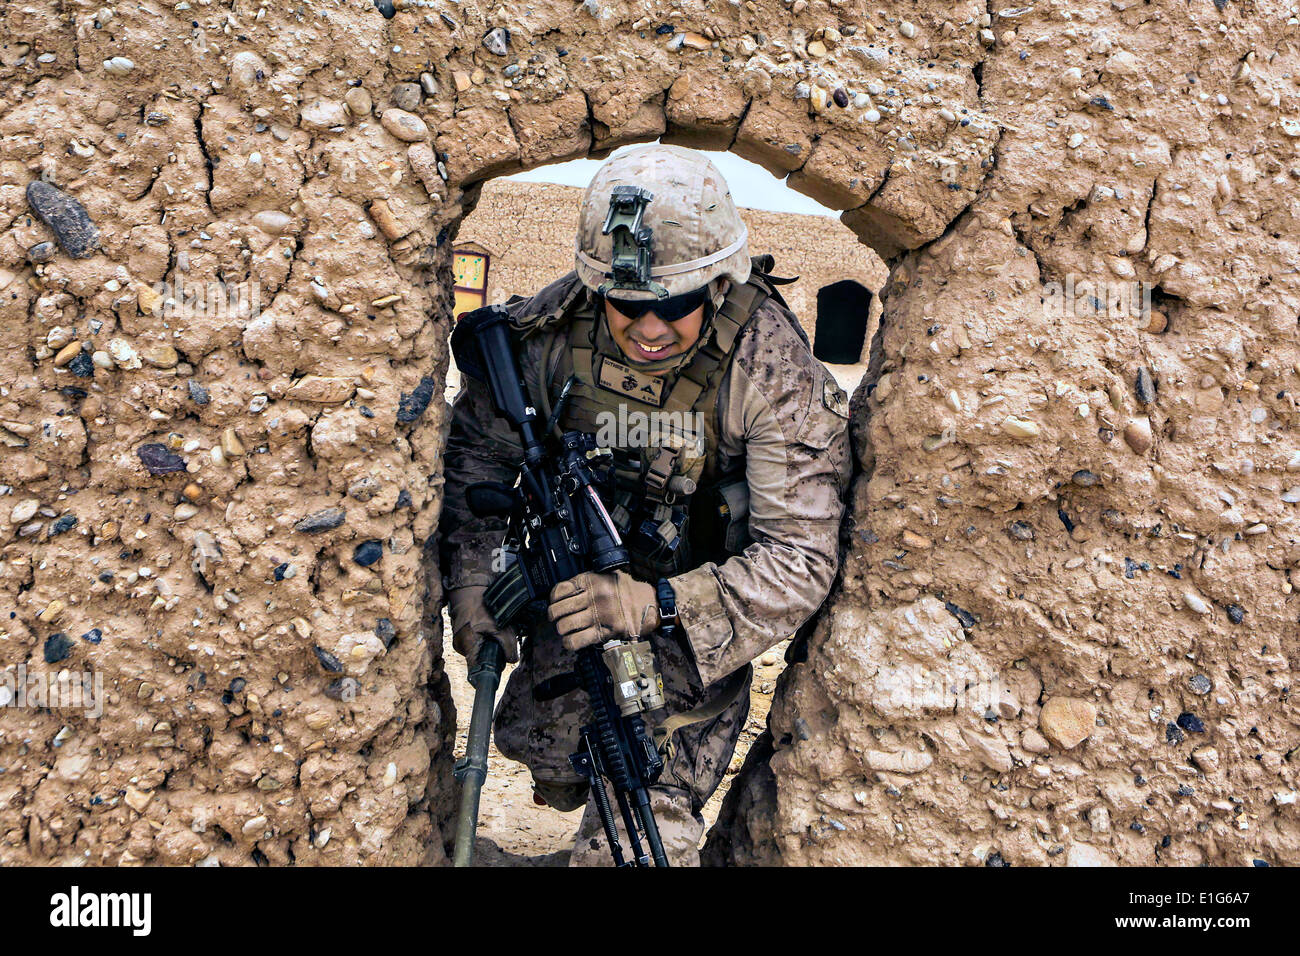 US Marine LCpl. Joseph Guthrie III drückt durch eine Öffnung in eine verlassene Verbindung während einer Patrouille Reconnaissance 15. Mai 2014 in der Nähe von Patrol Base Boldak in der Provinz Helmand, Afghanistan Schlamm. Stockfoto